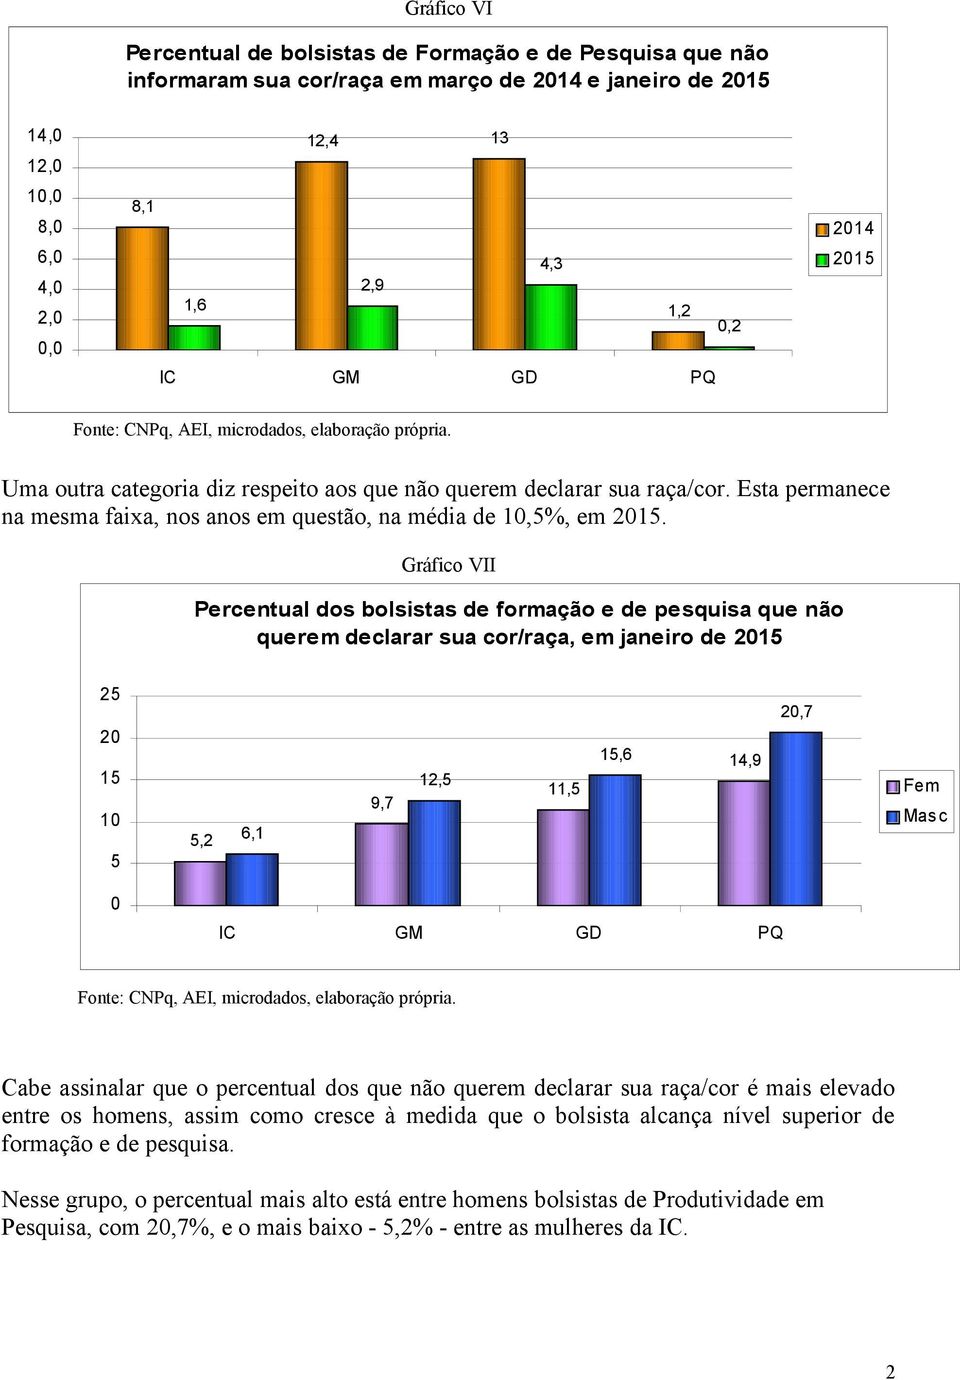 Gráfico VII Percentual dos bolsistas de formação e de pesquisa que não querem declarar sua cor/raça, em janeiro de 215 25 2 15 1 5 5,2 6,1 9,7 12,5 11,5 15,6 14,9 2,7 Fem Masc IC GM GD PQ Cabe